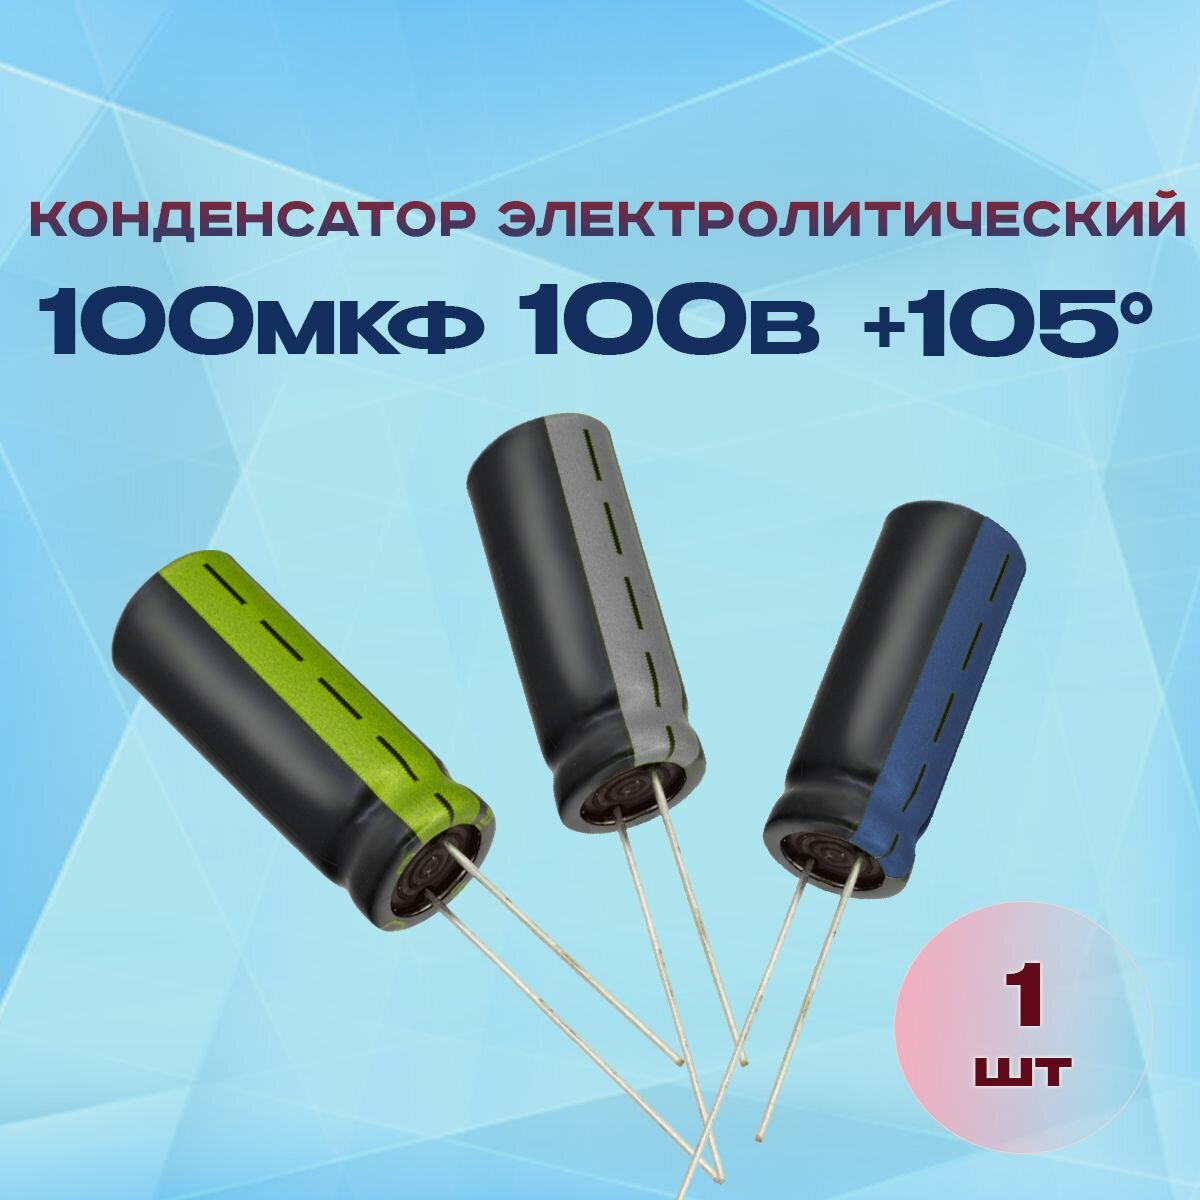 Конденсатор электролитический 100МКФХ100В +105 1 шт.